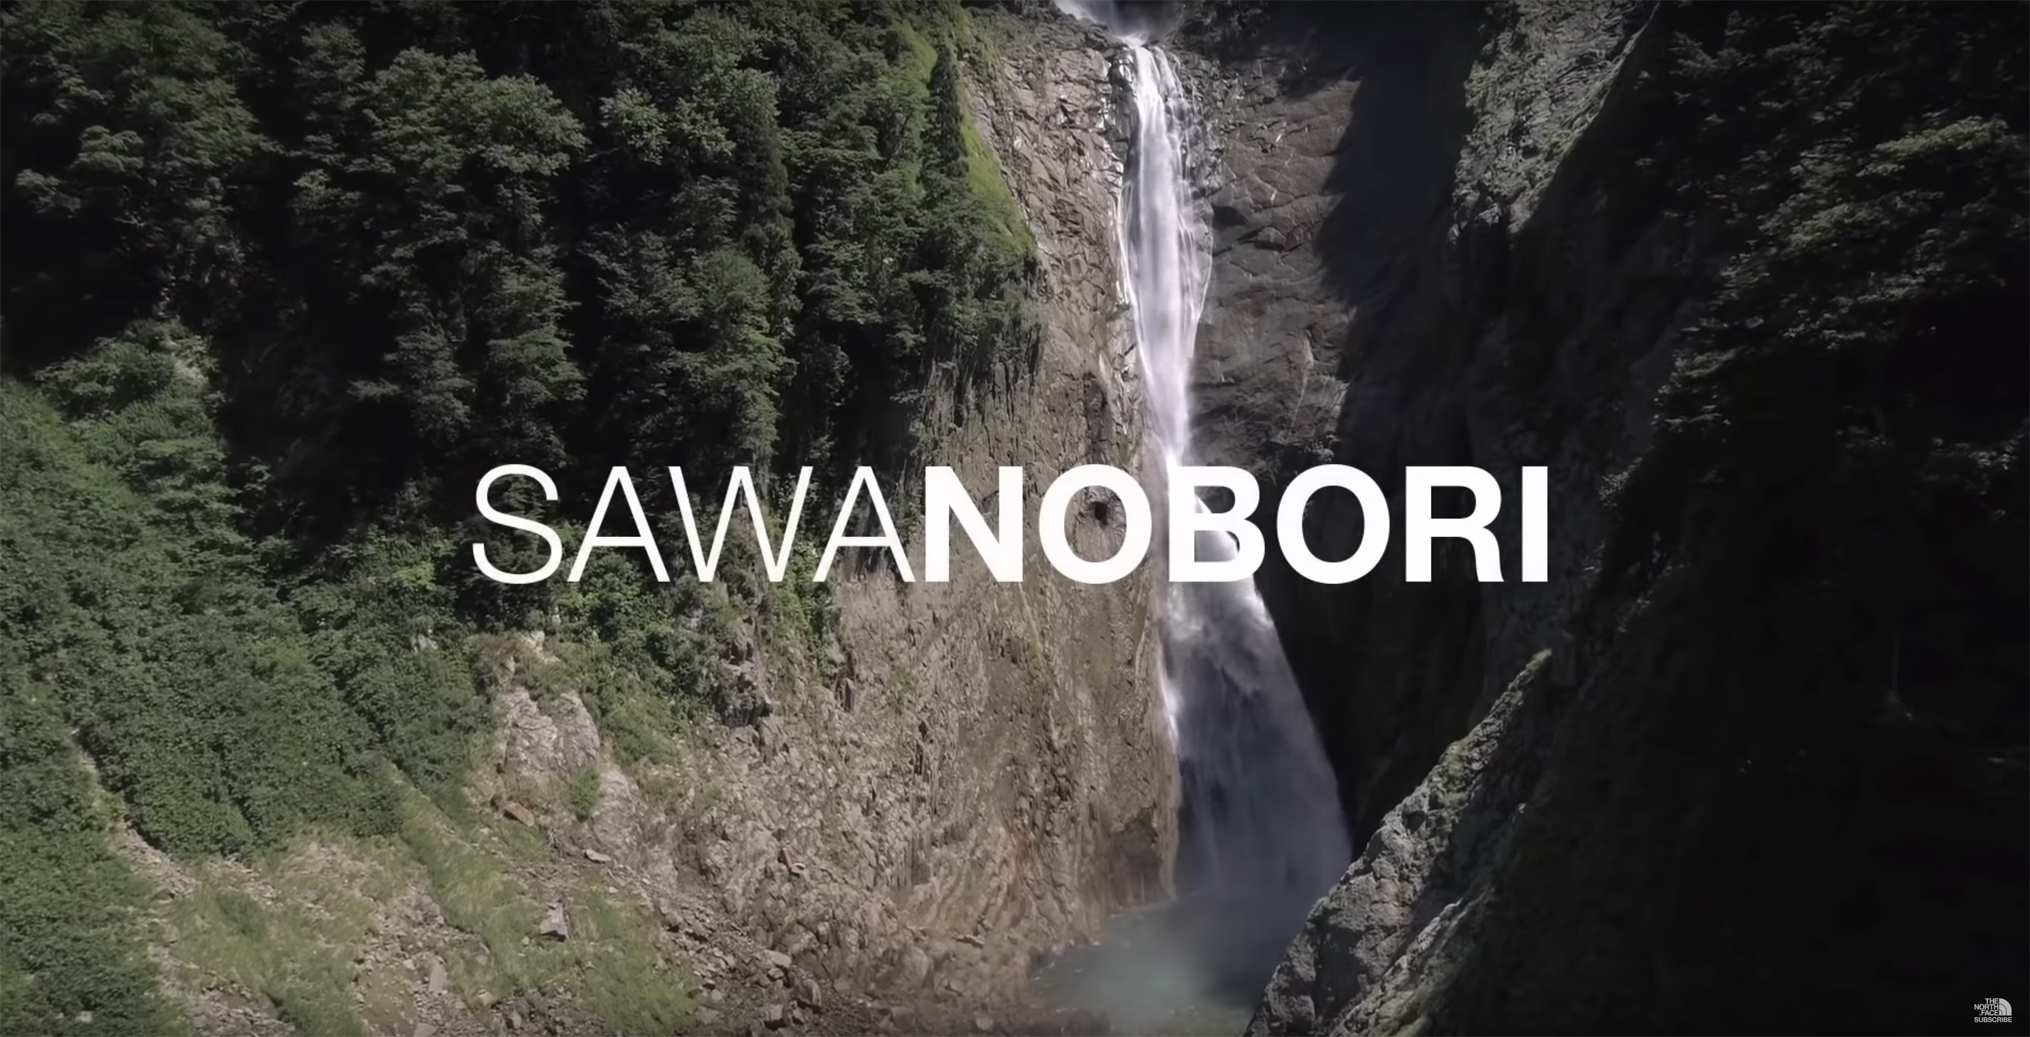 手に汗握る 日本一の落差350m 称名滝を5名のクライマーが Sawanobori する映像作品 Akimama アウトドアカルチャーのニュースサイト